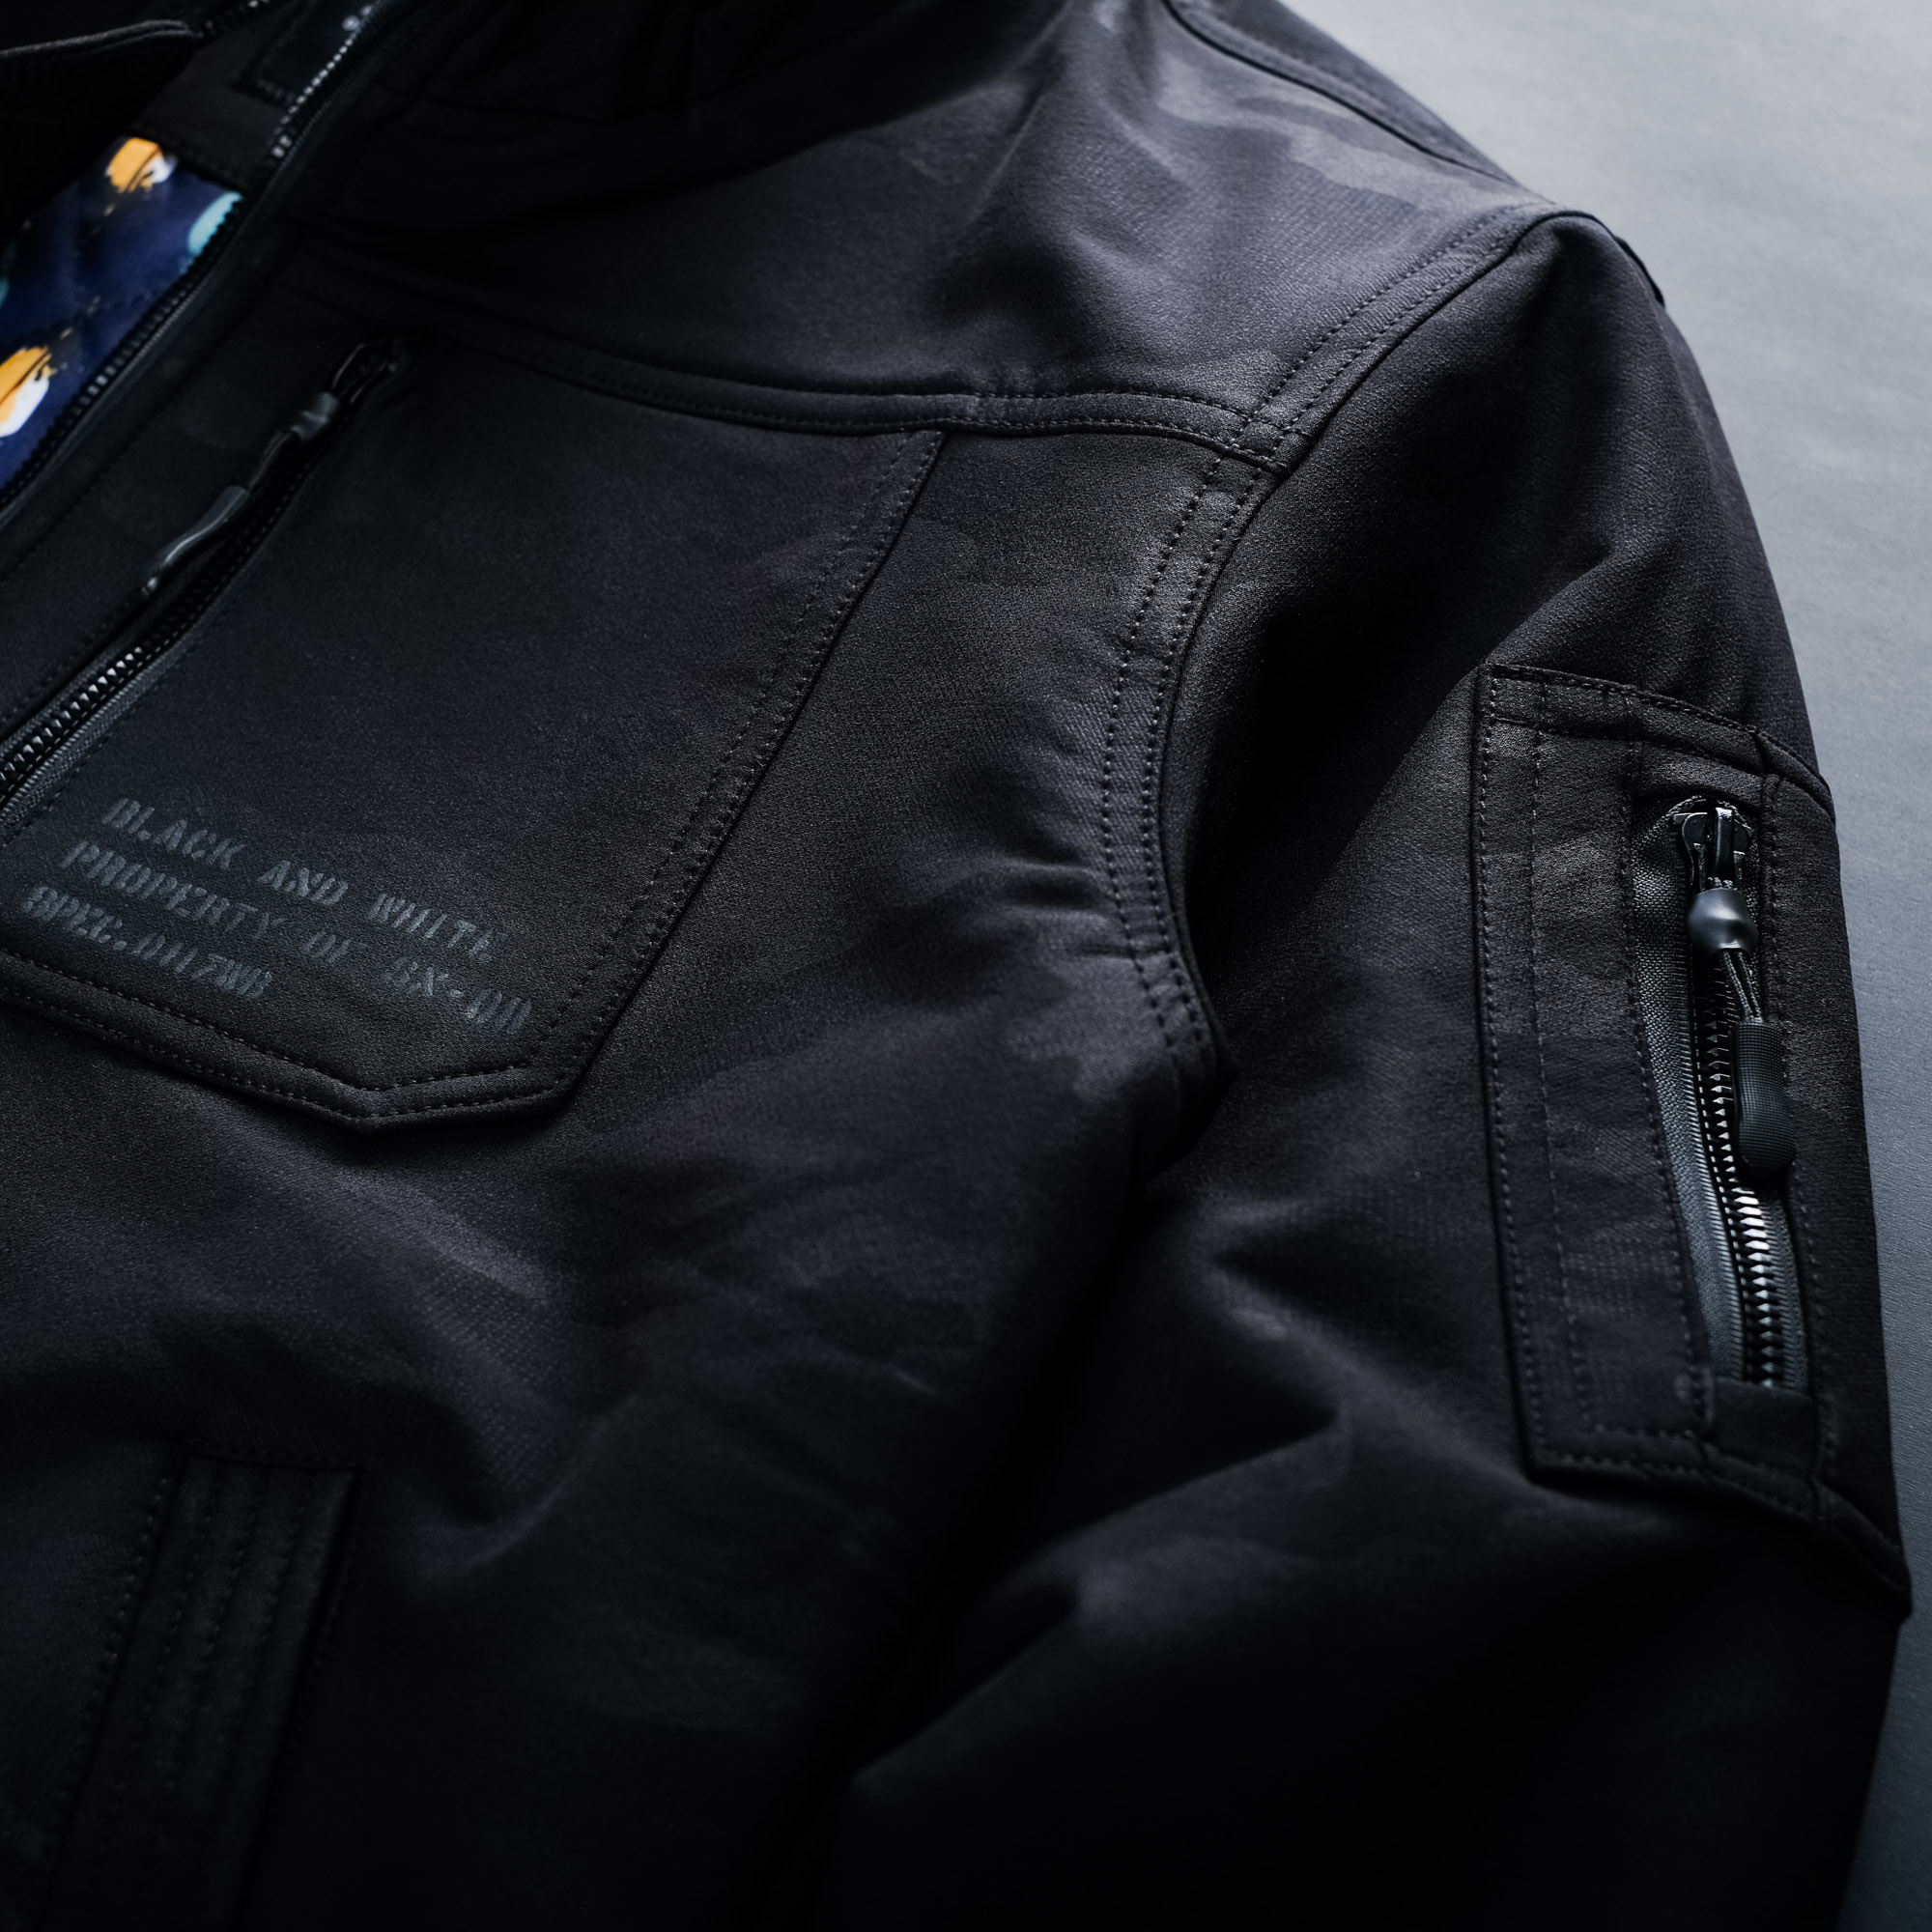 Cerebro Jacket Black “SPECIAL MATERIAL” – SIXPAX